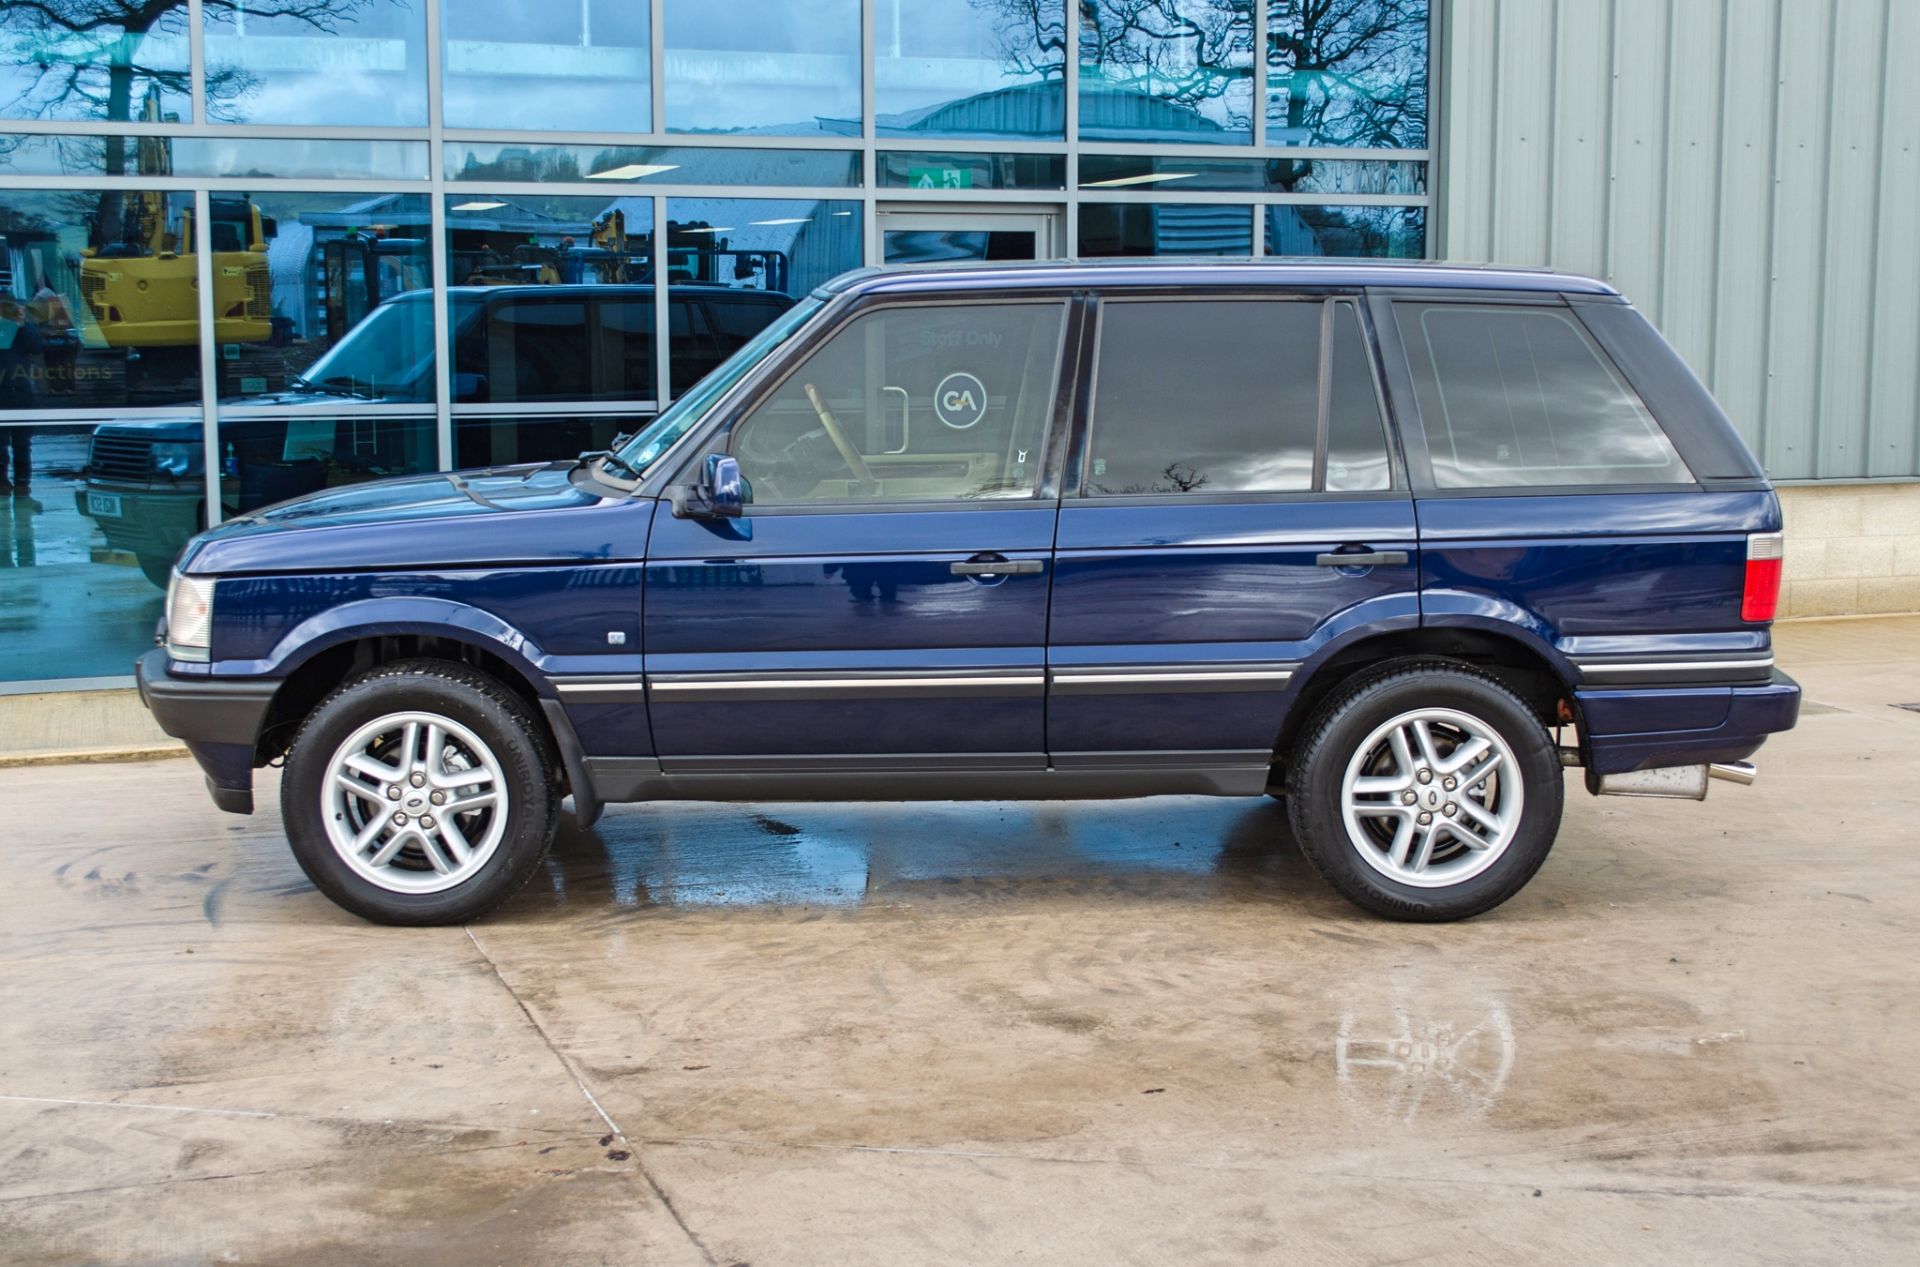 2001 Range Rover Vogue 4.6 litre V8 Auto 4 door SUV estate Registration: Y498 HNP Chassis: - Image 16 of 65